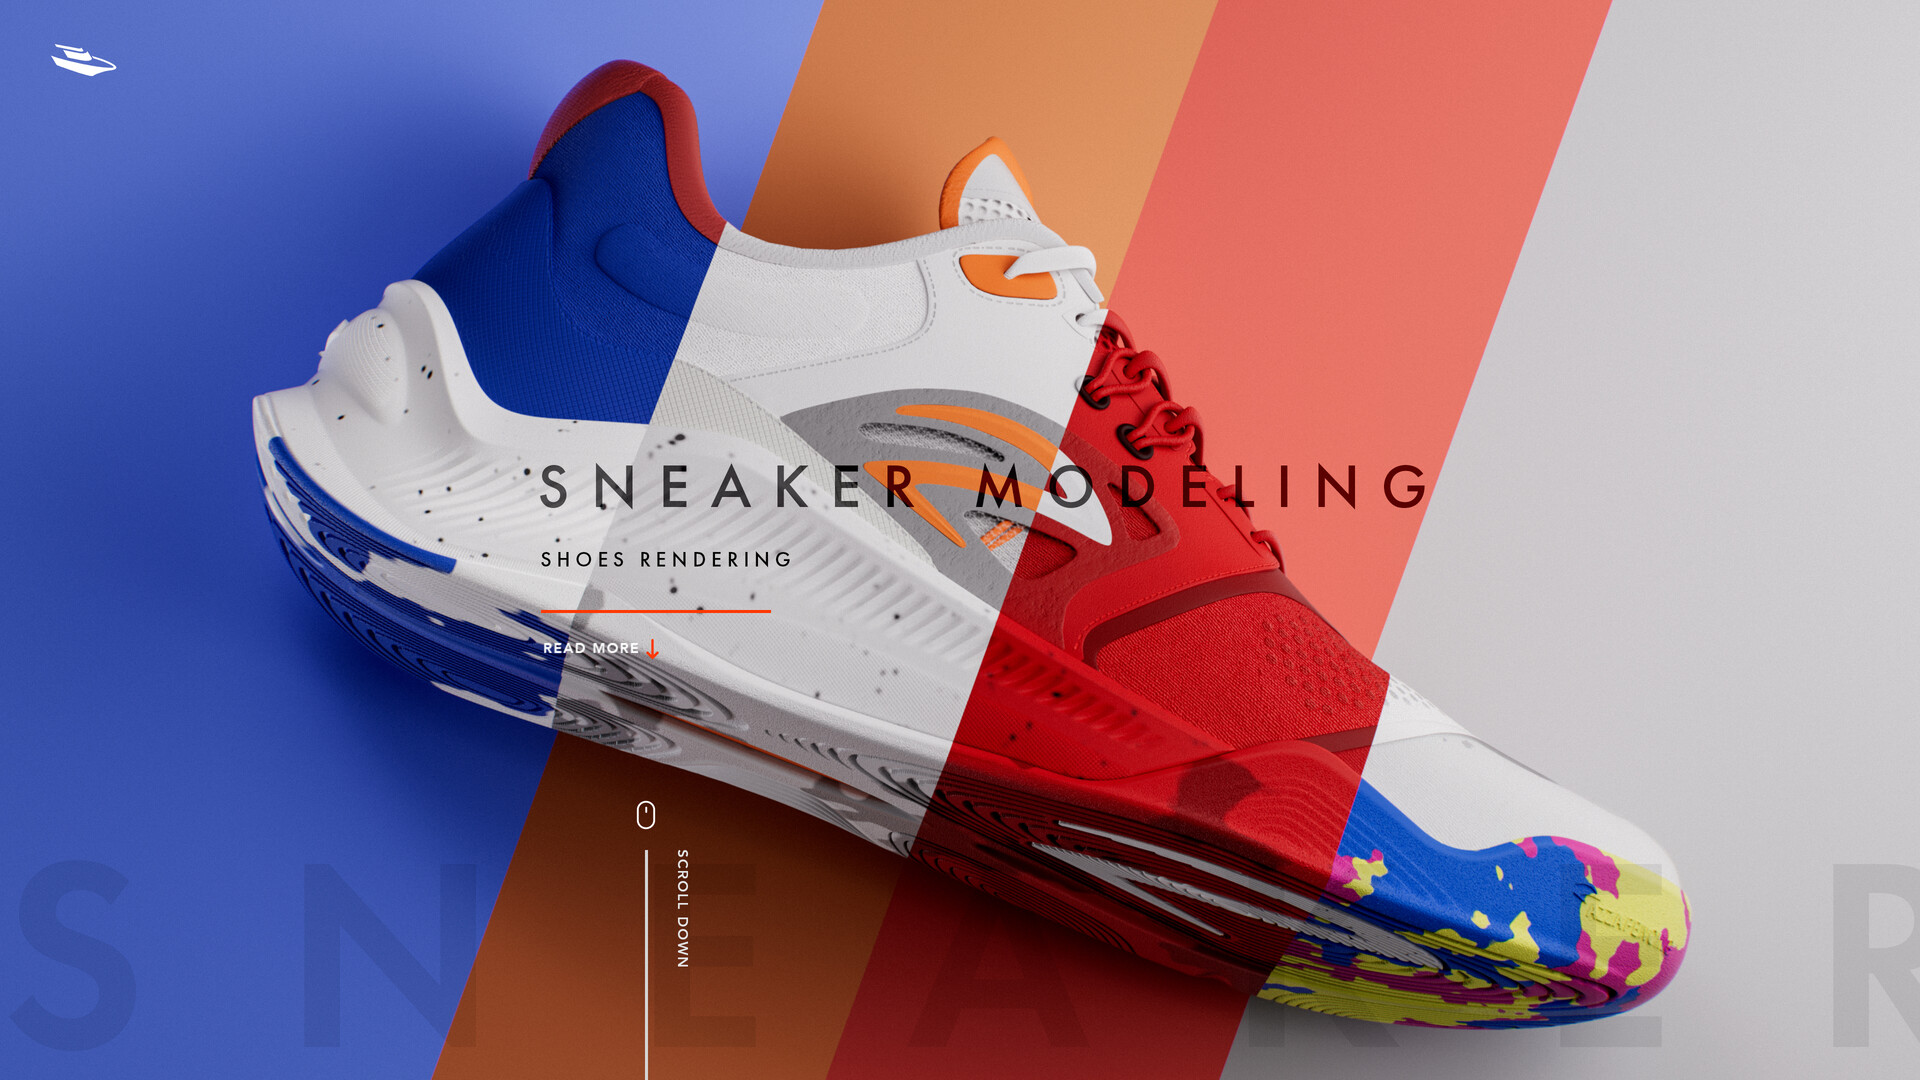 ArtStation - Sneaker modeling